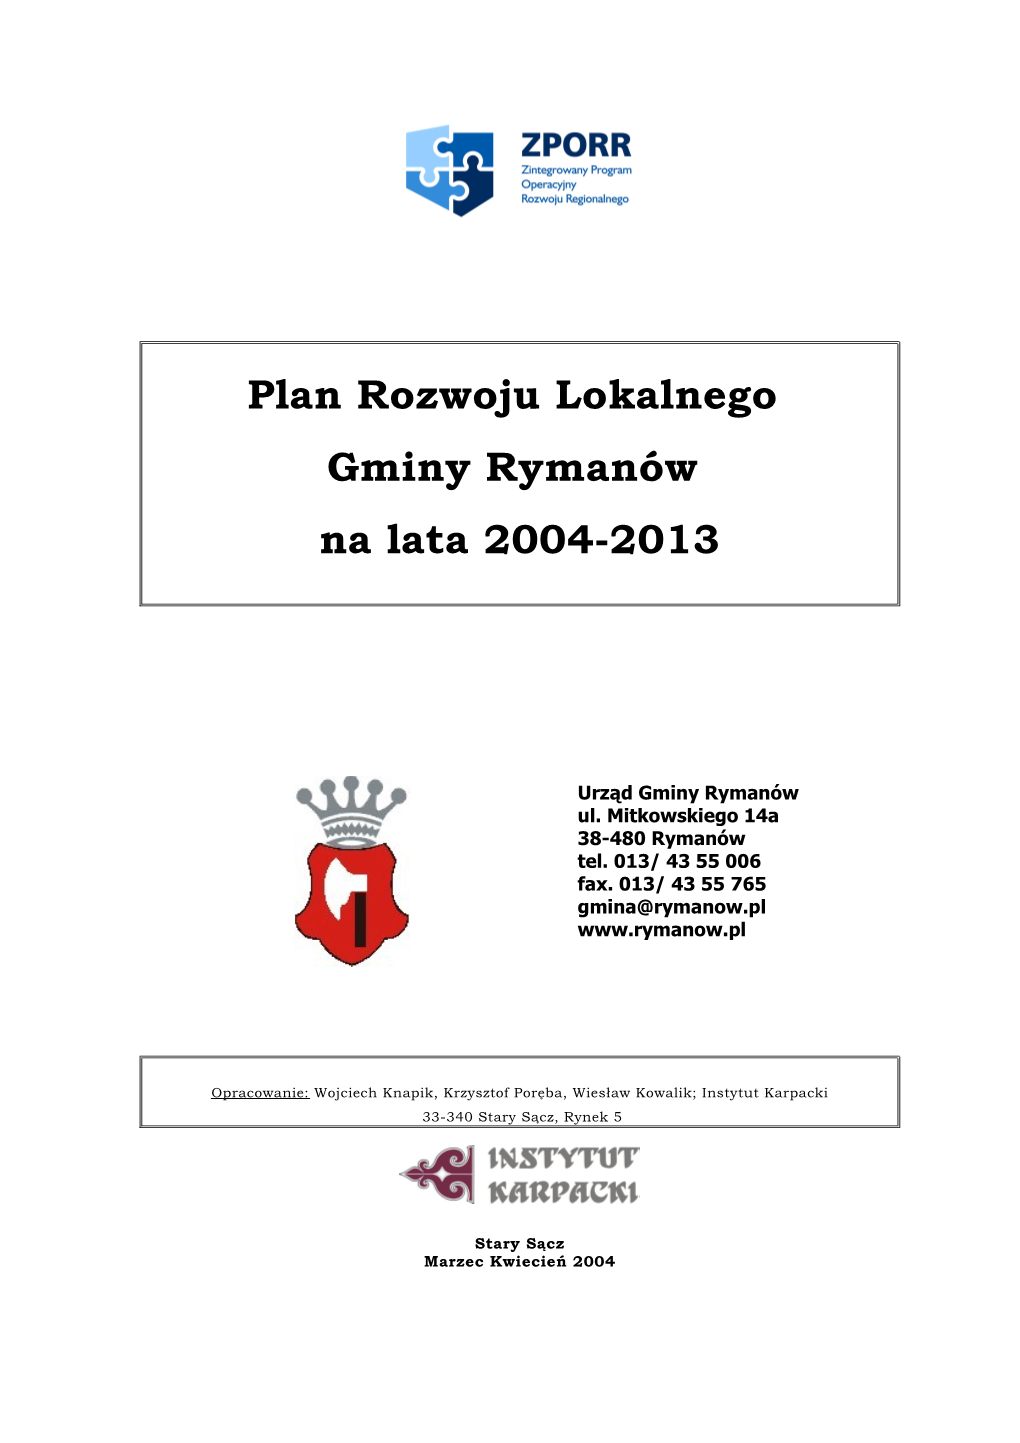 Plan Rozwoju Lokalnego Gminy Rymanów Na Lata 2004-2013